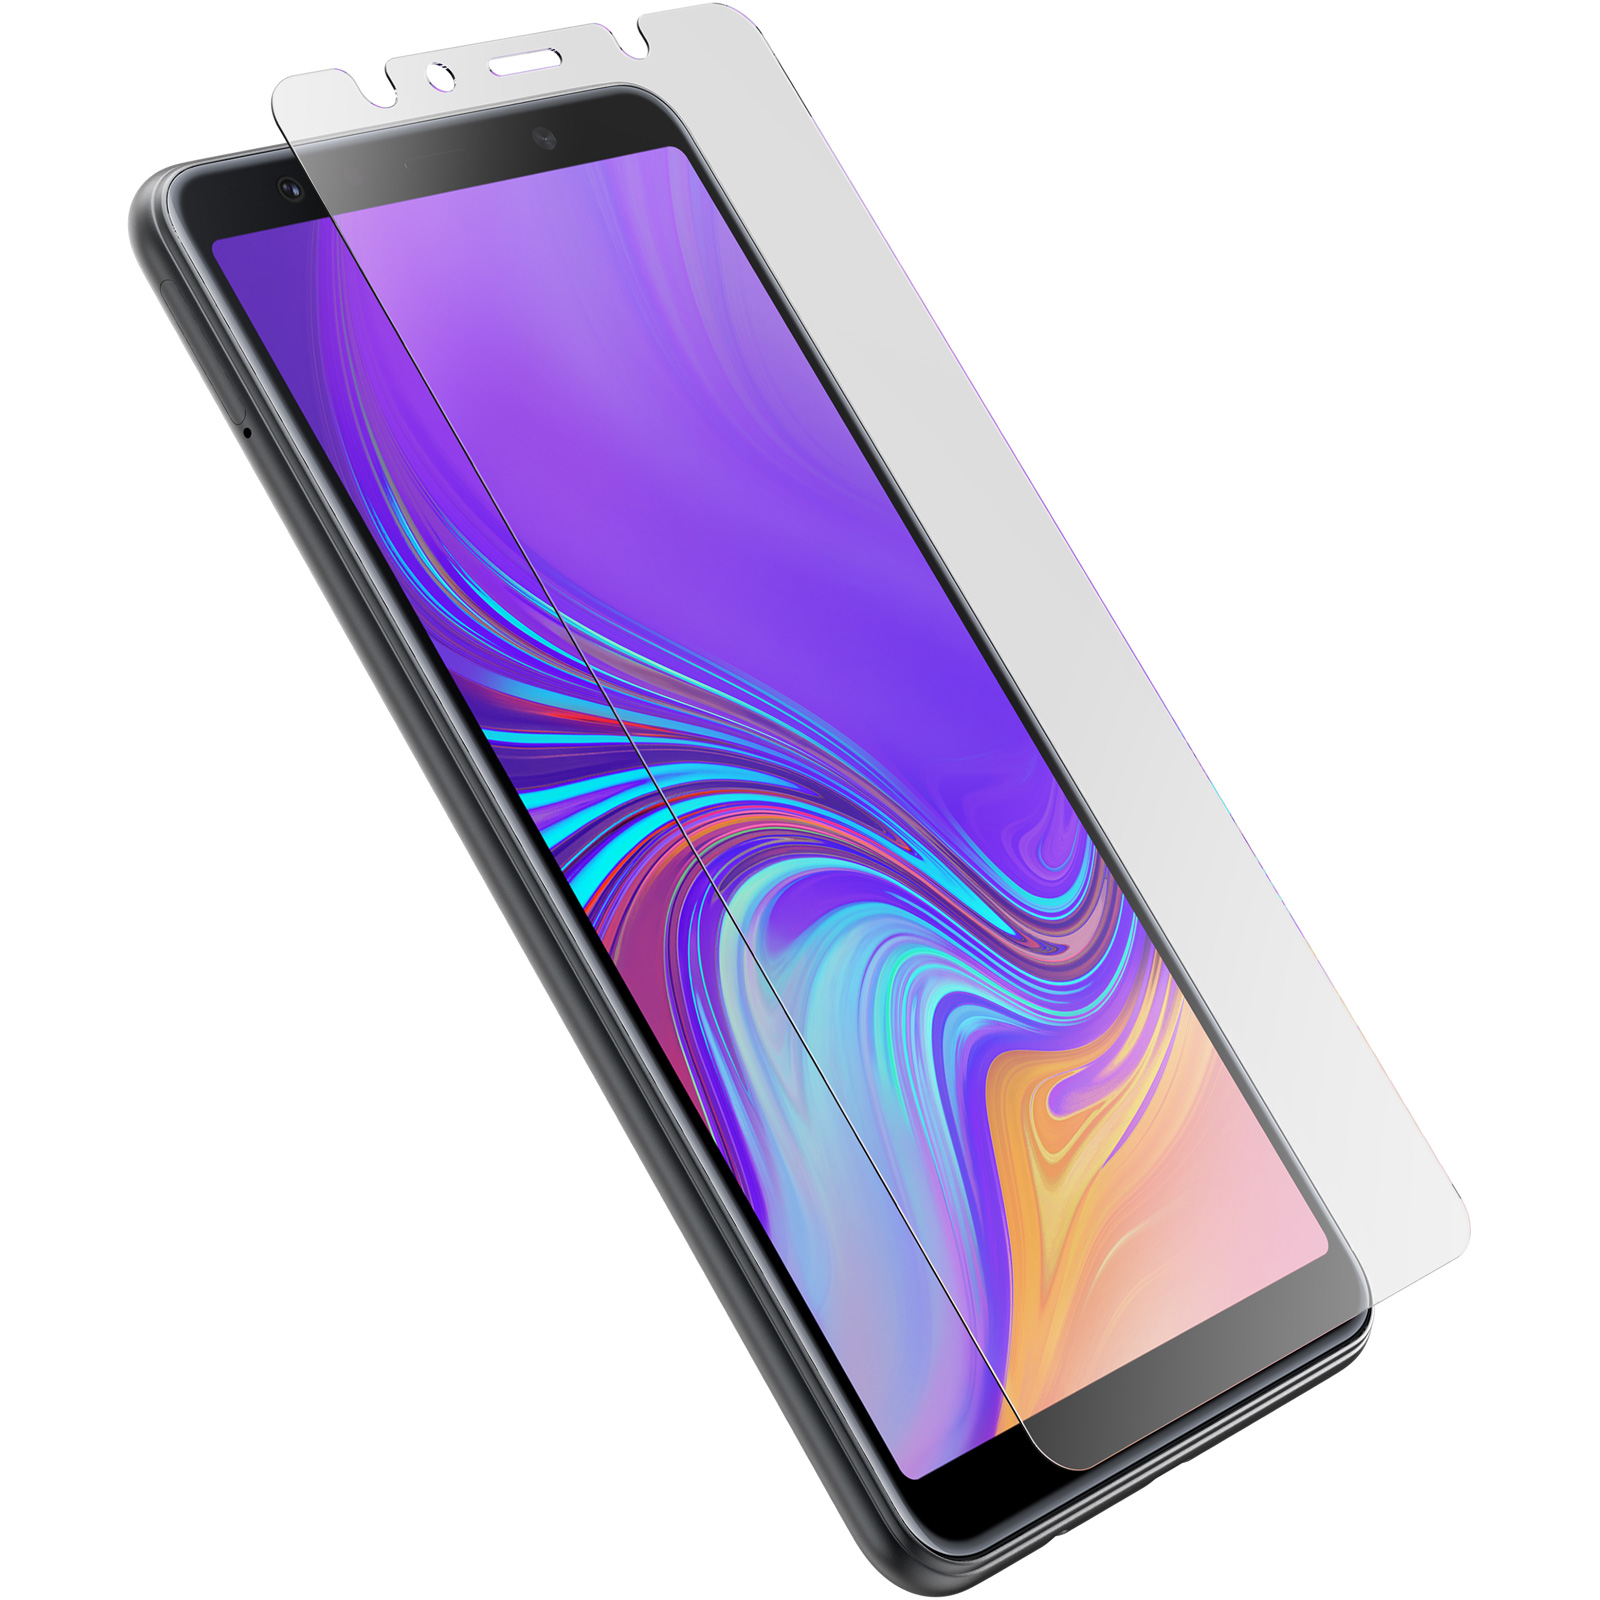 Galaxy A9 (2018), OtterBox Alpha: Bảo vệ điện thoại của bạn một cách toàn diện với bộ ốp lưng OtterBox Alpha cho chiếc điện thoại Samsung Galaxy A9 (2018). Hãy lựa chọn cho mình một chiếc ốp lưng cực kỳ chắc chắn và đẹp mắt với hình ảnh này.